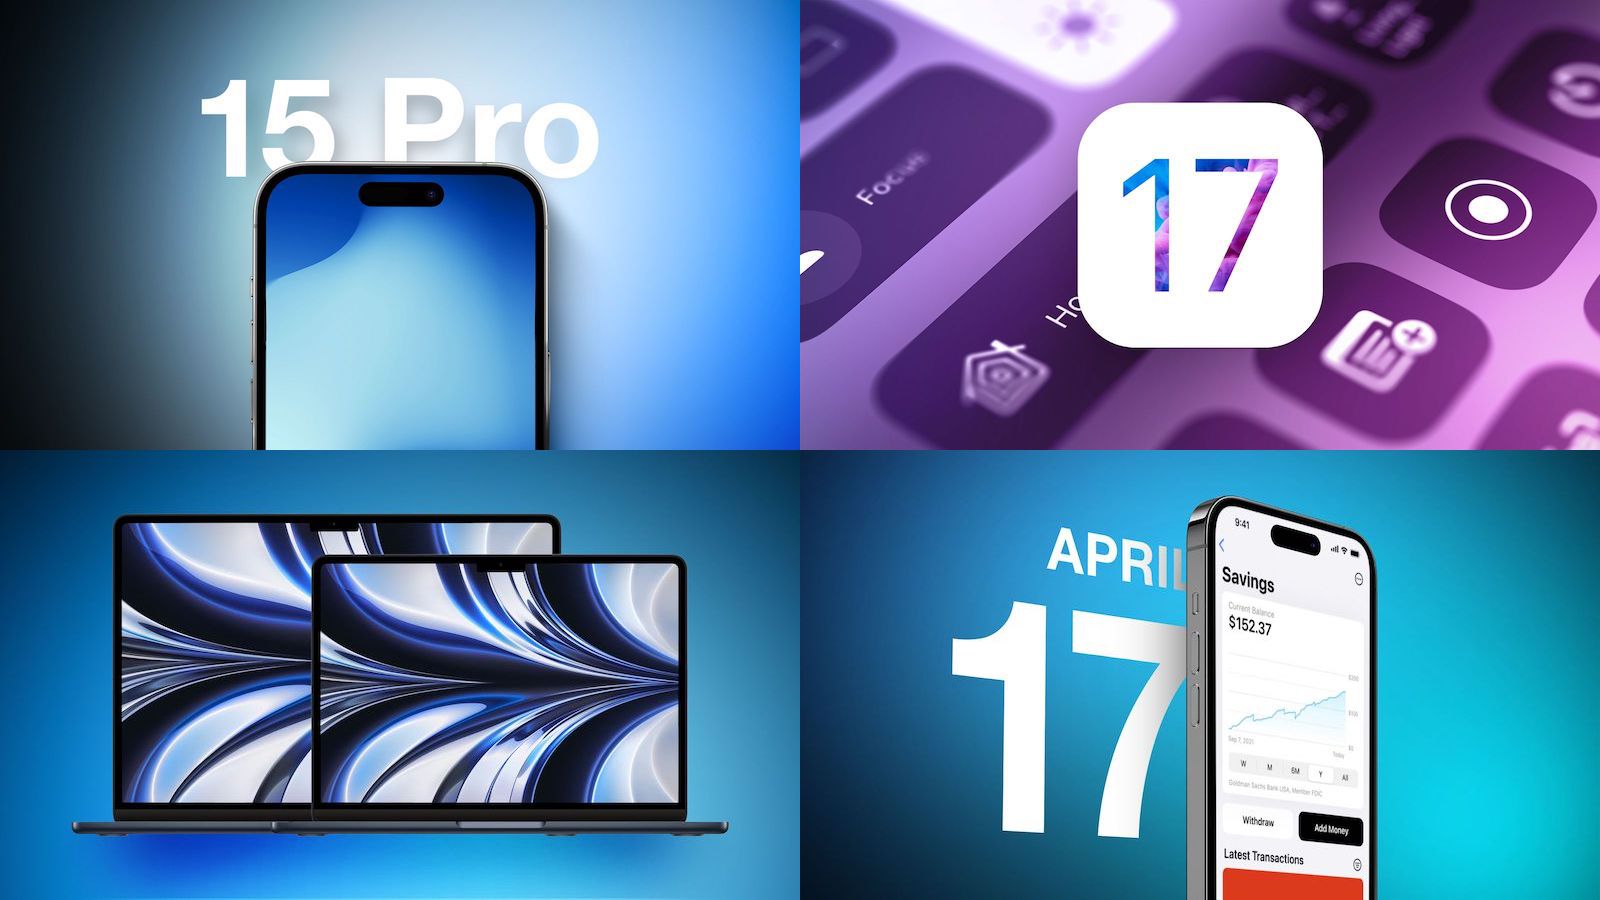 Topverhalen: iPhone 15 Pro, iOS 17, Apple Card Savings Soon en meer